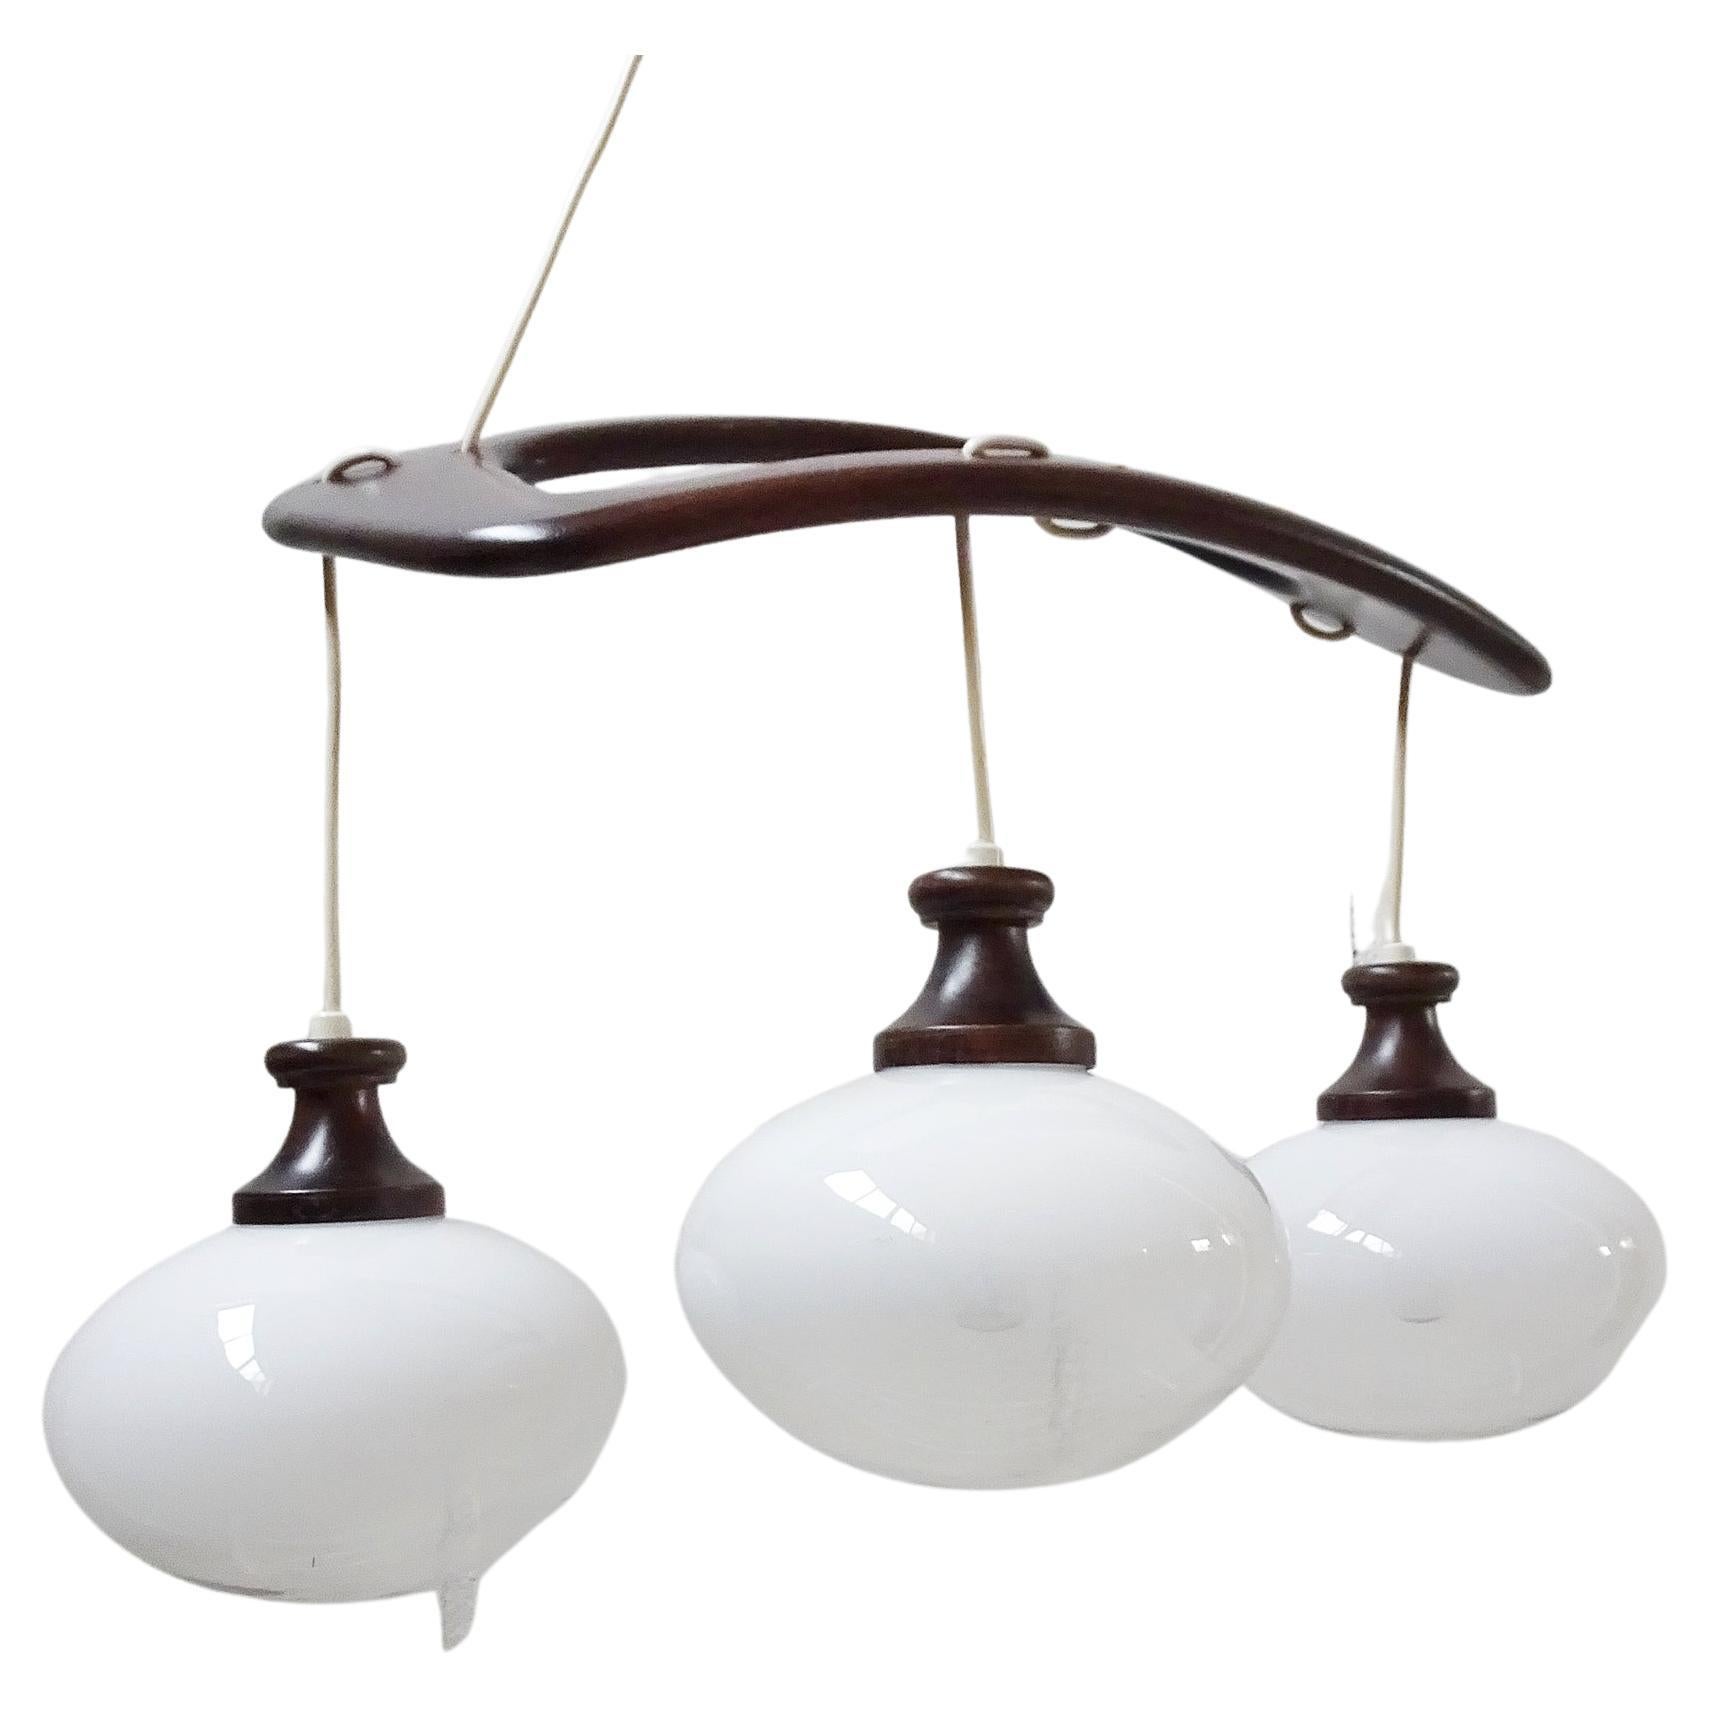 Lampe pendante italienne par Mazzega des années 1960. Design élégant du milieu du siècle en bois de teck arqué et trois boules de verre. Le verre semi teinté en fait une lampe suspendue idéale au-dessus de la table.

Douille de lampe 3 x E14, la